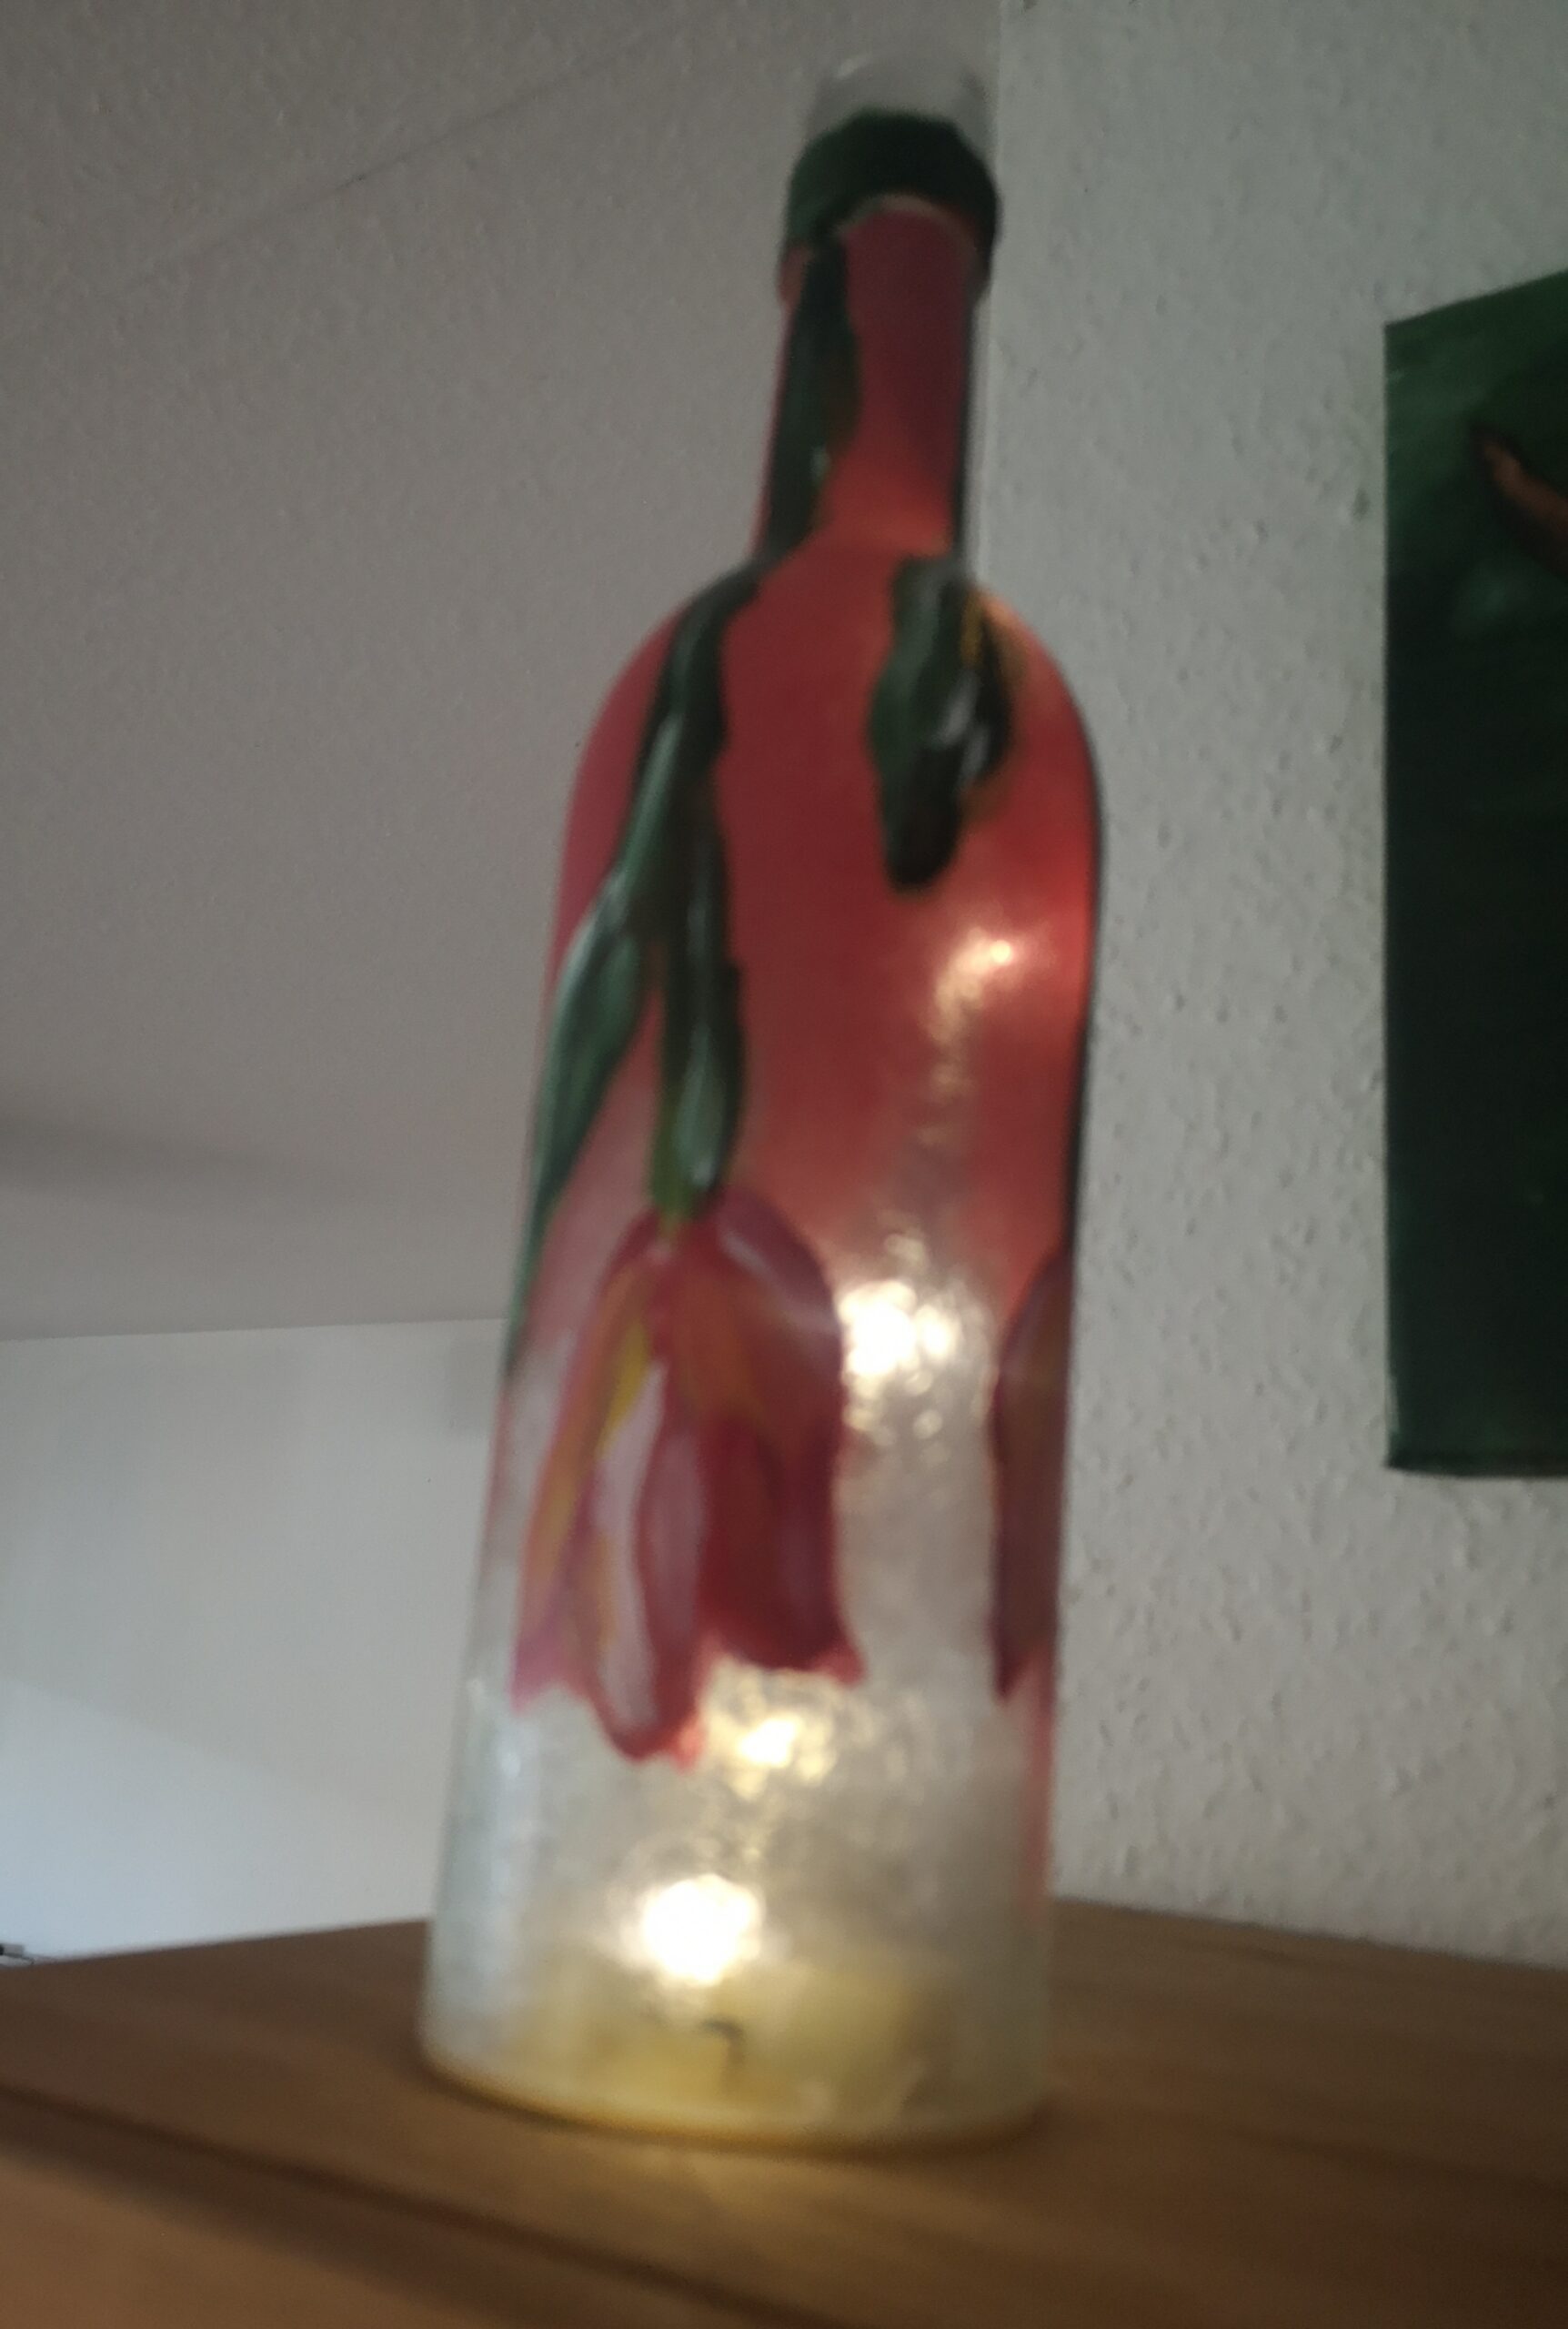 Bild einer beleuchteten Flasche, die mit hängenden Tulpen bemalt ist